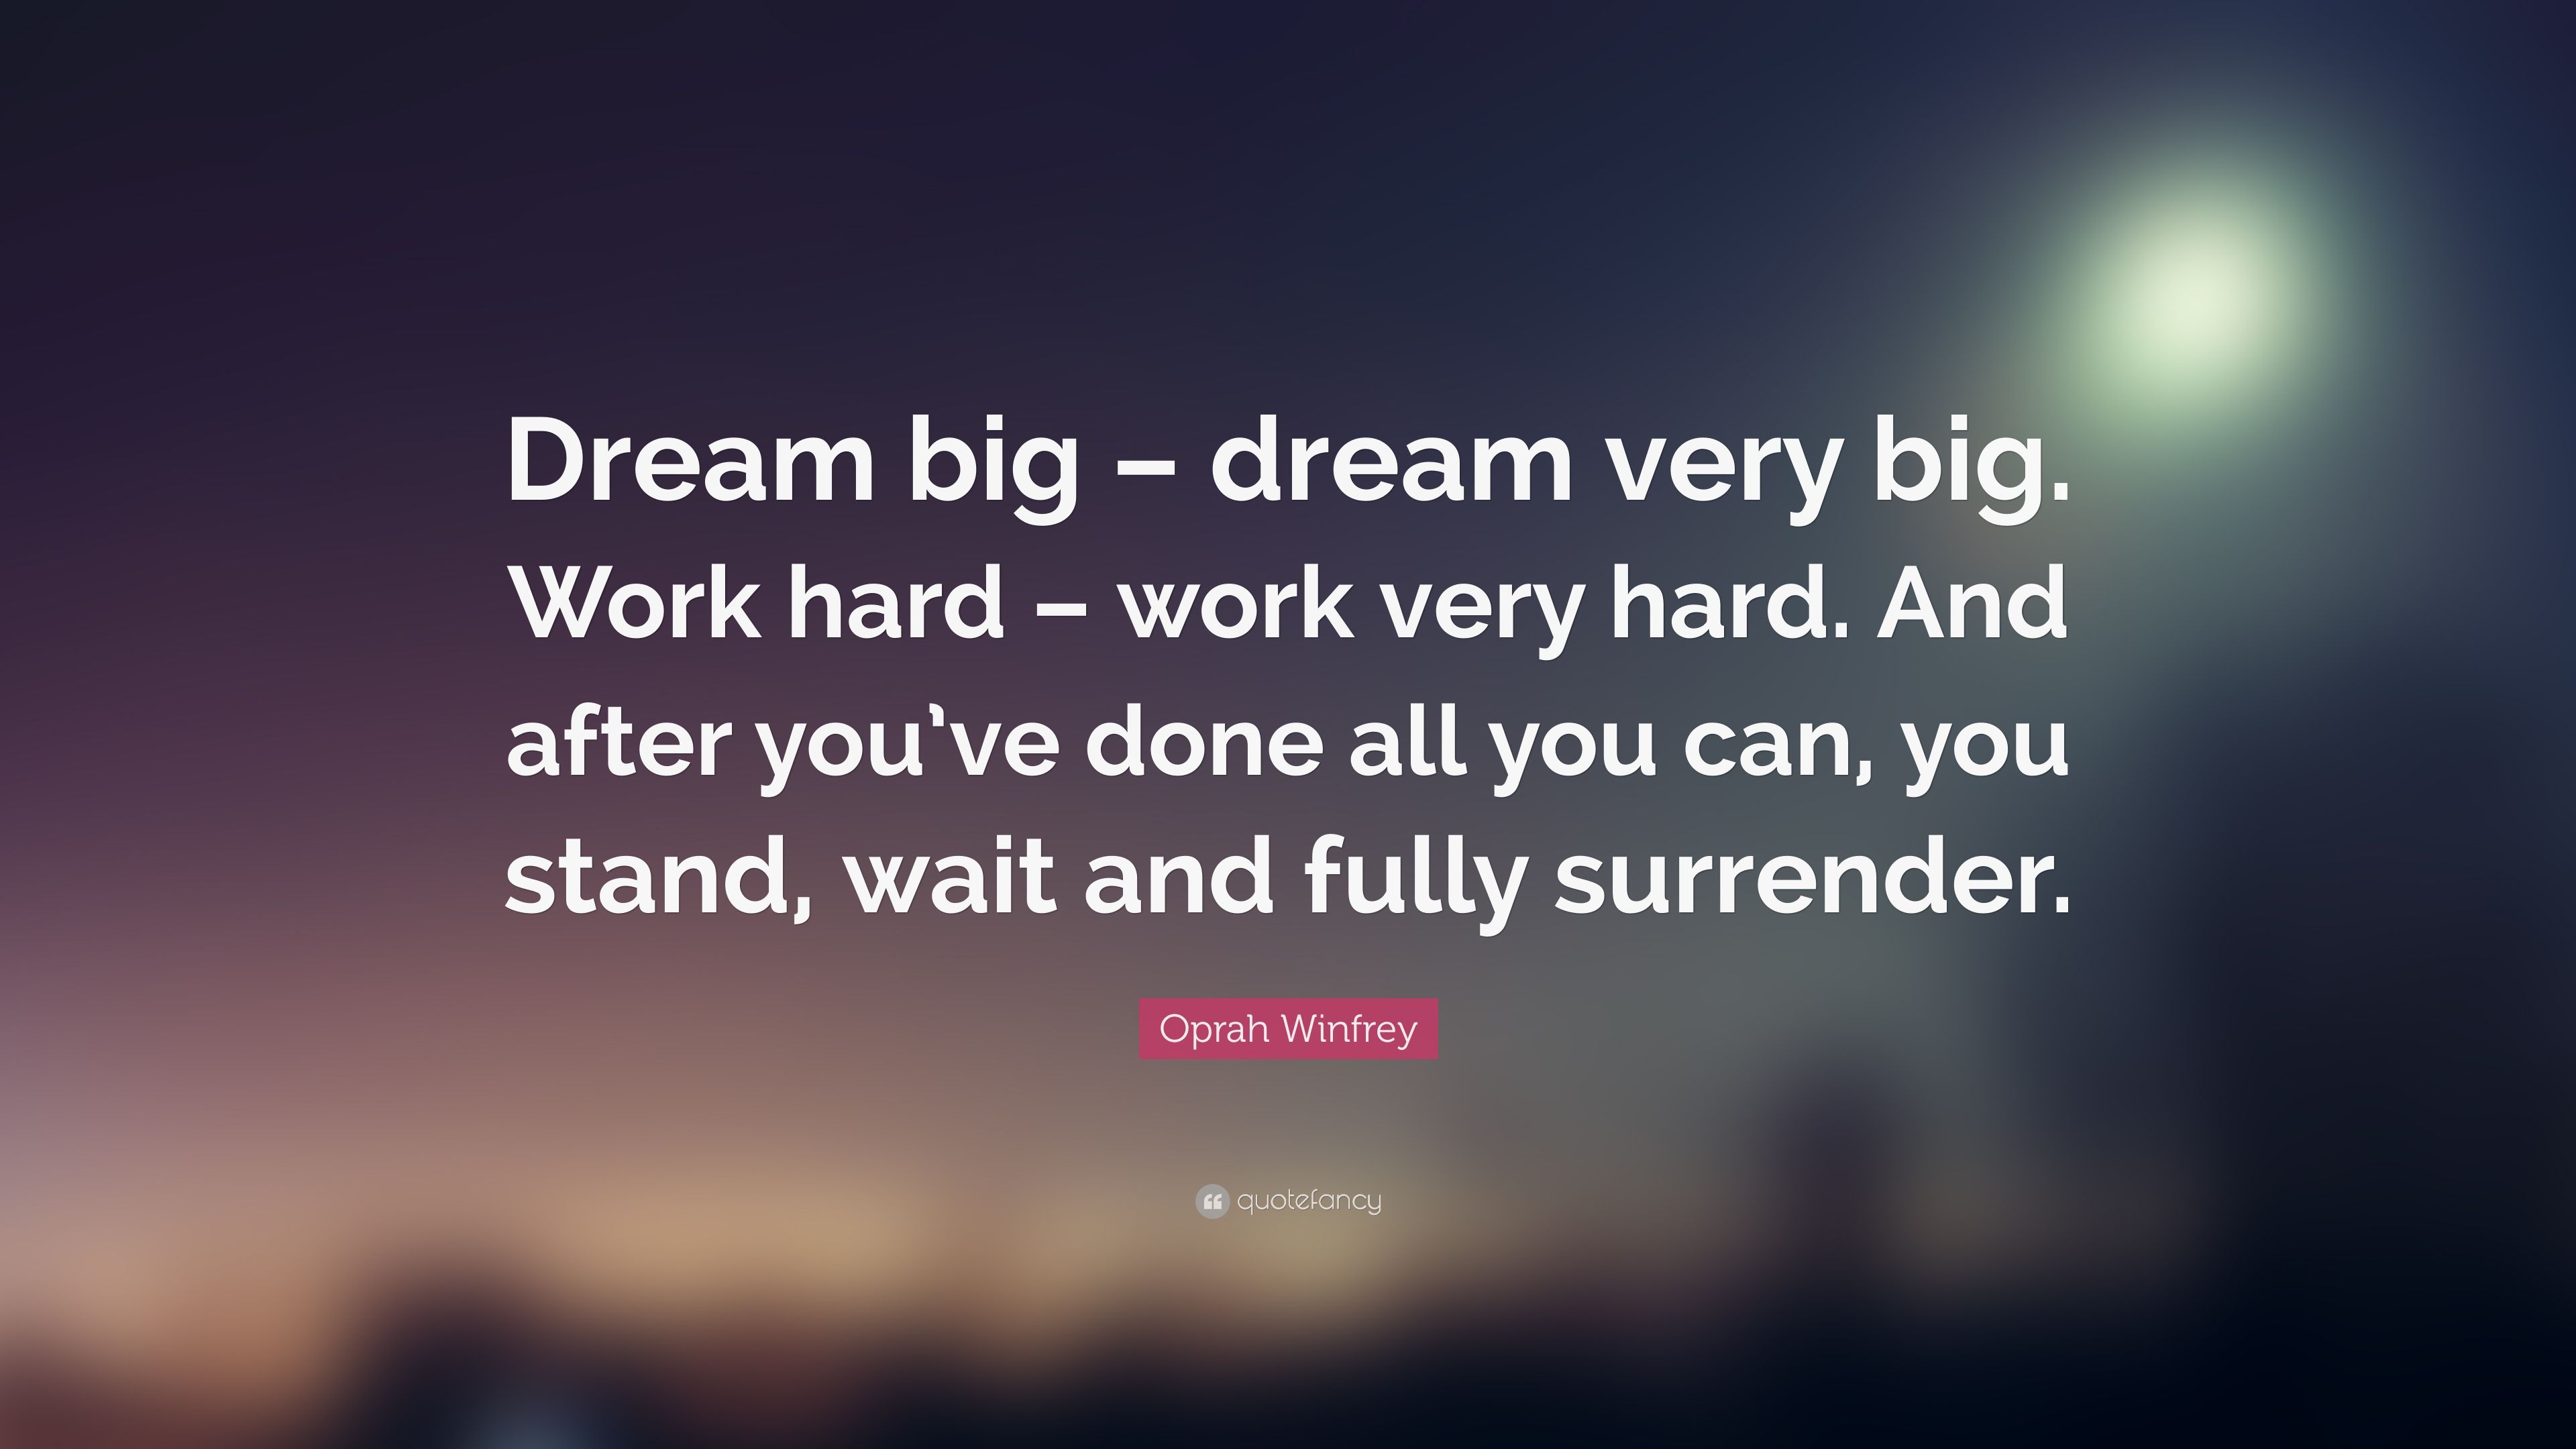 Oprah Winfrey Quote: “Dream big